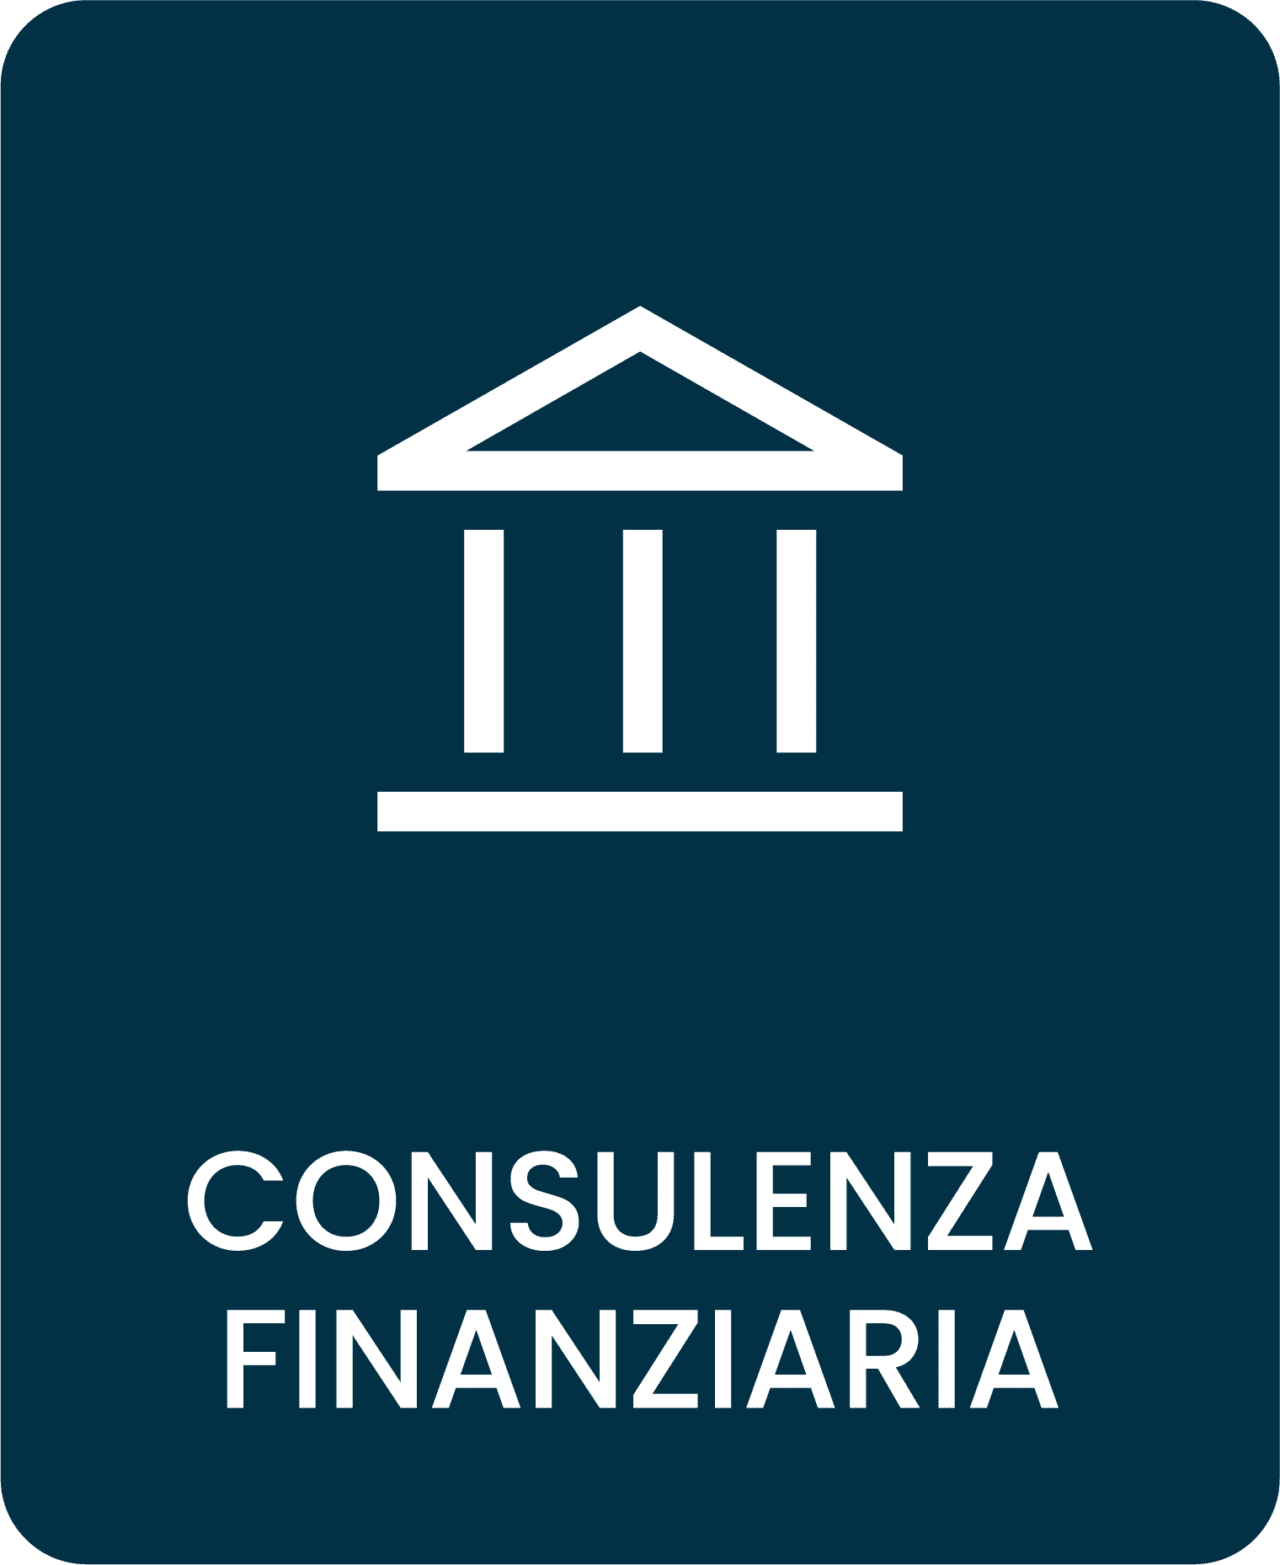 Consulenza finanziaria